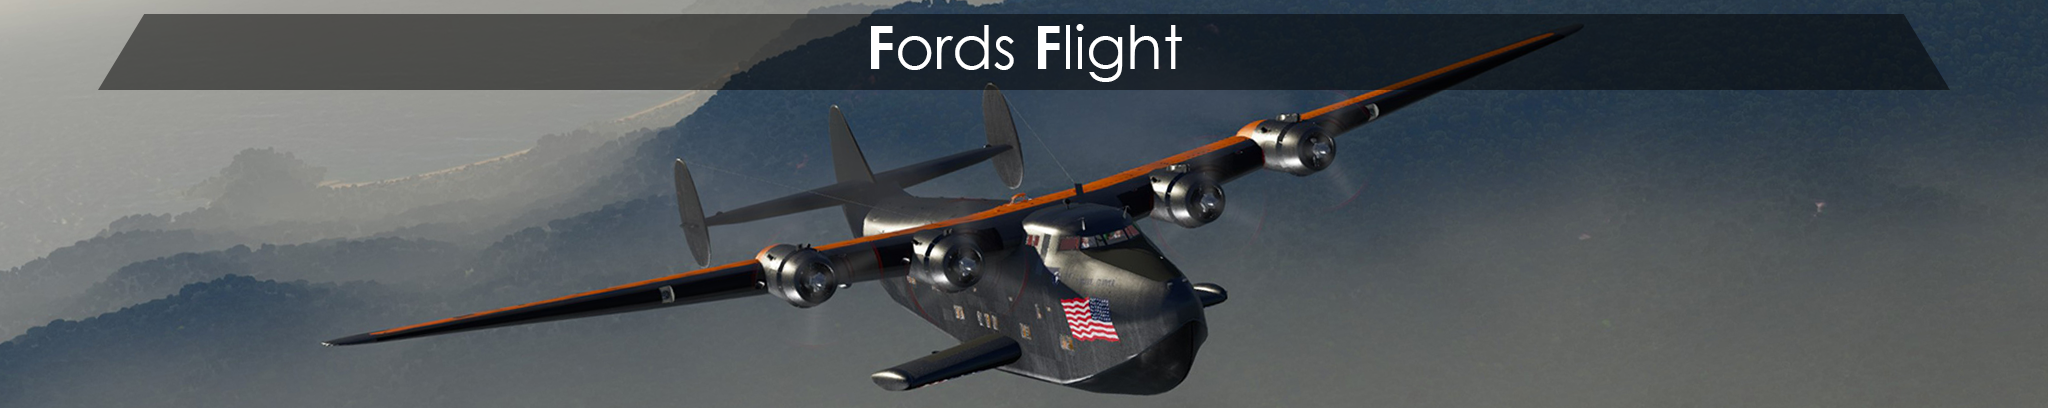 Fords Flight